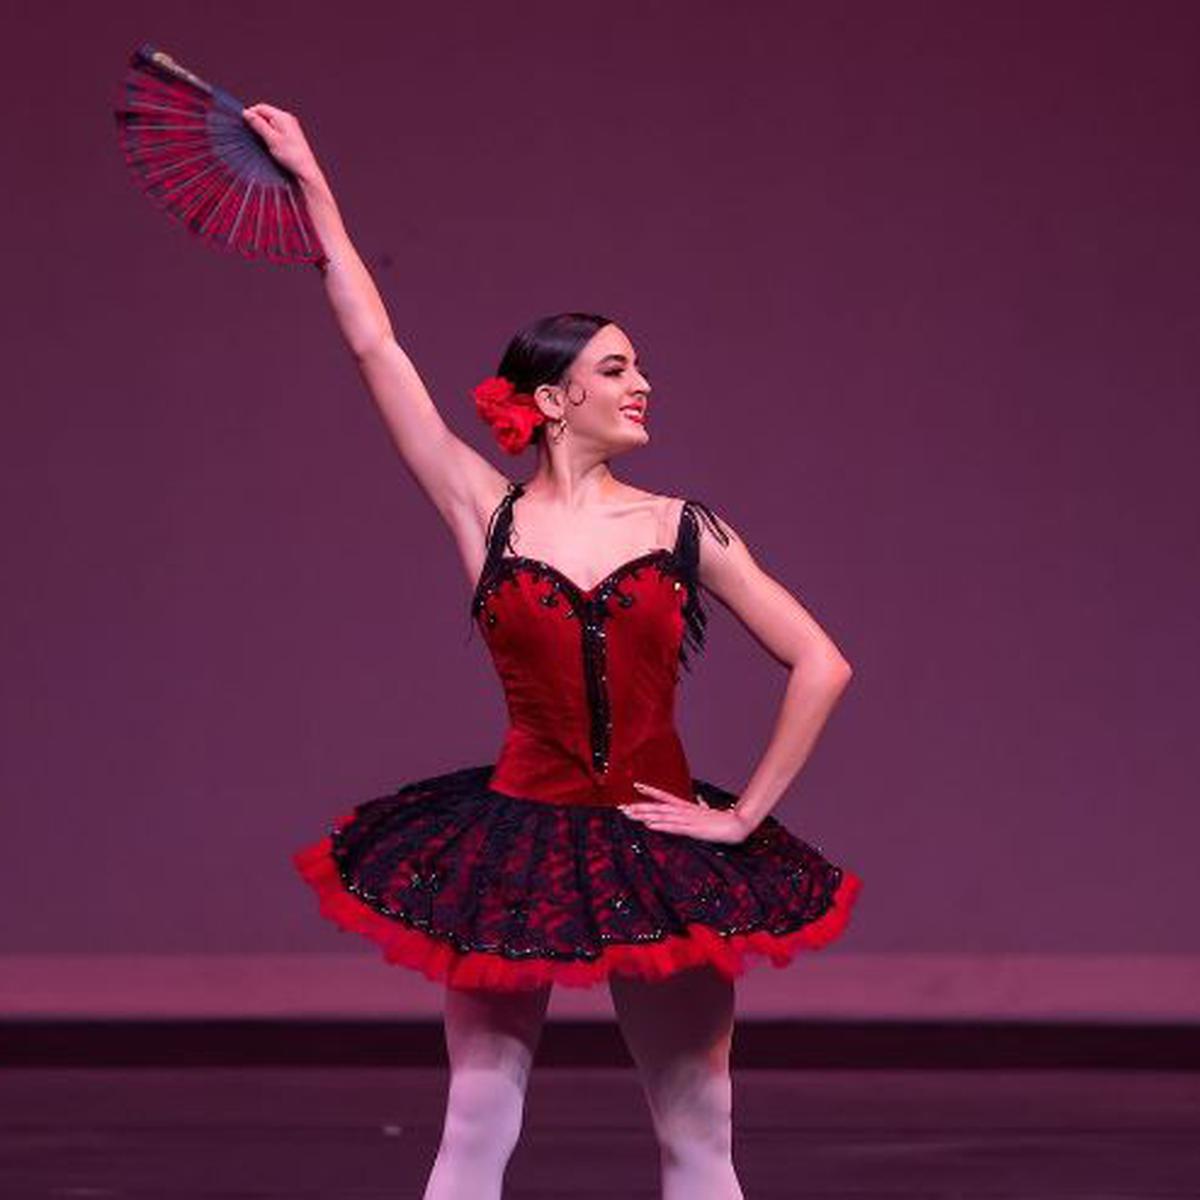 Falda tutu danza ballet en rojo, Mode de Mujer